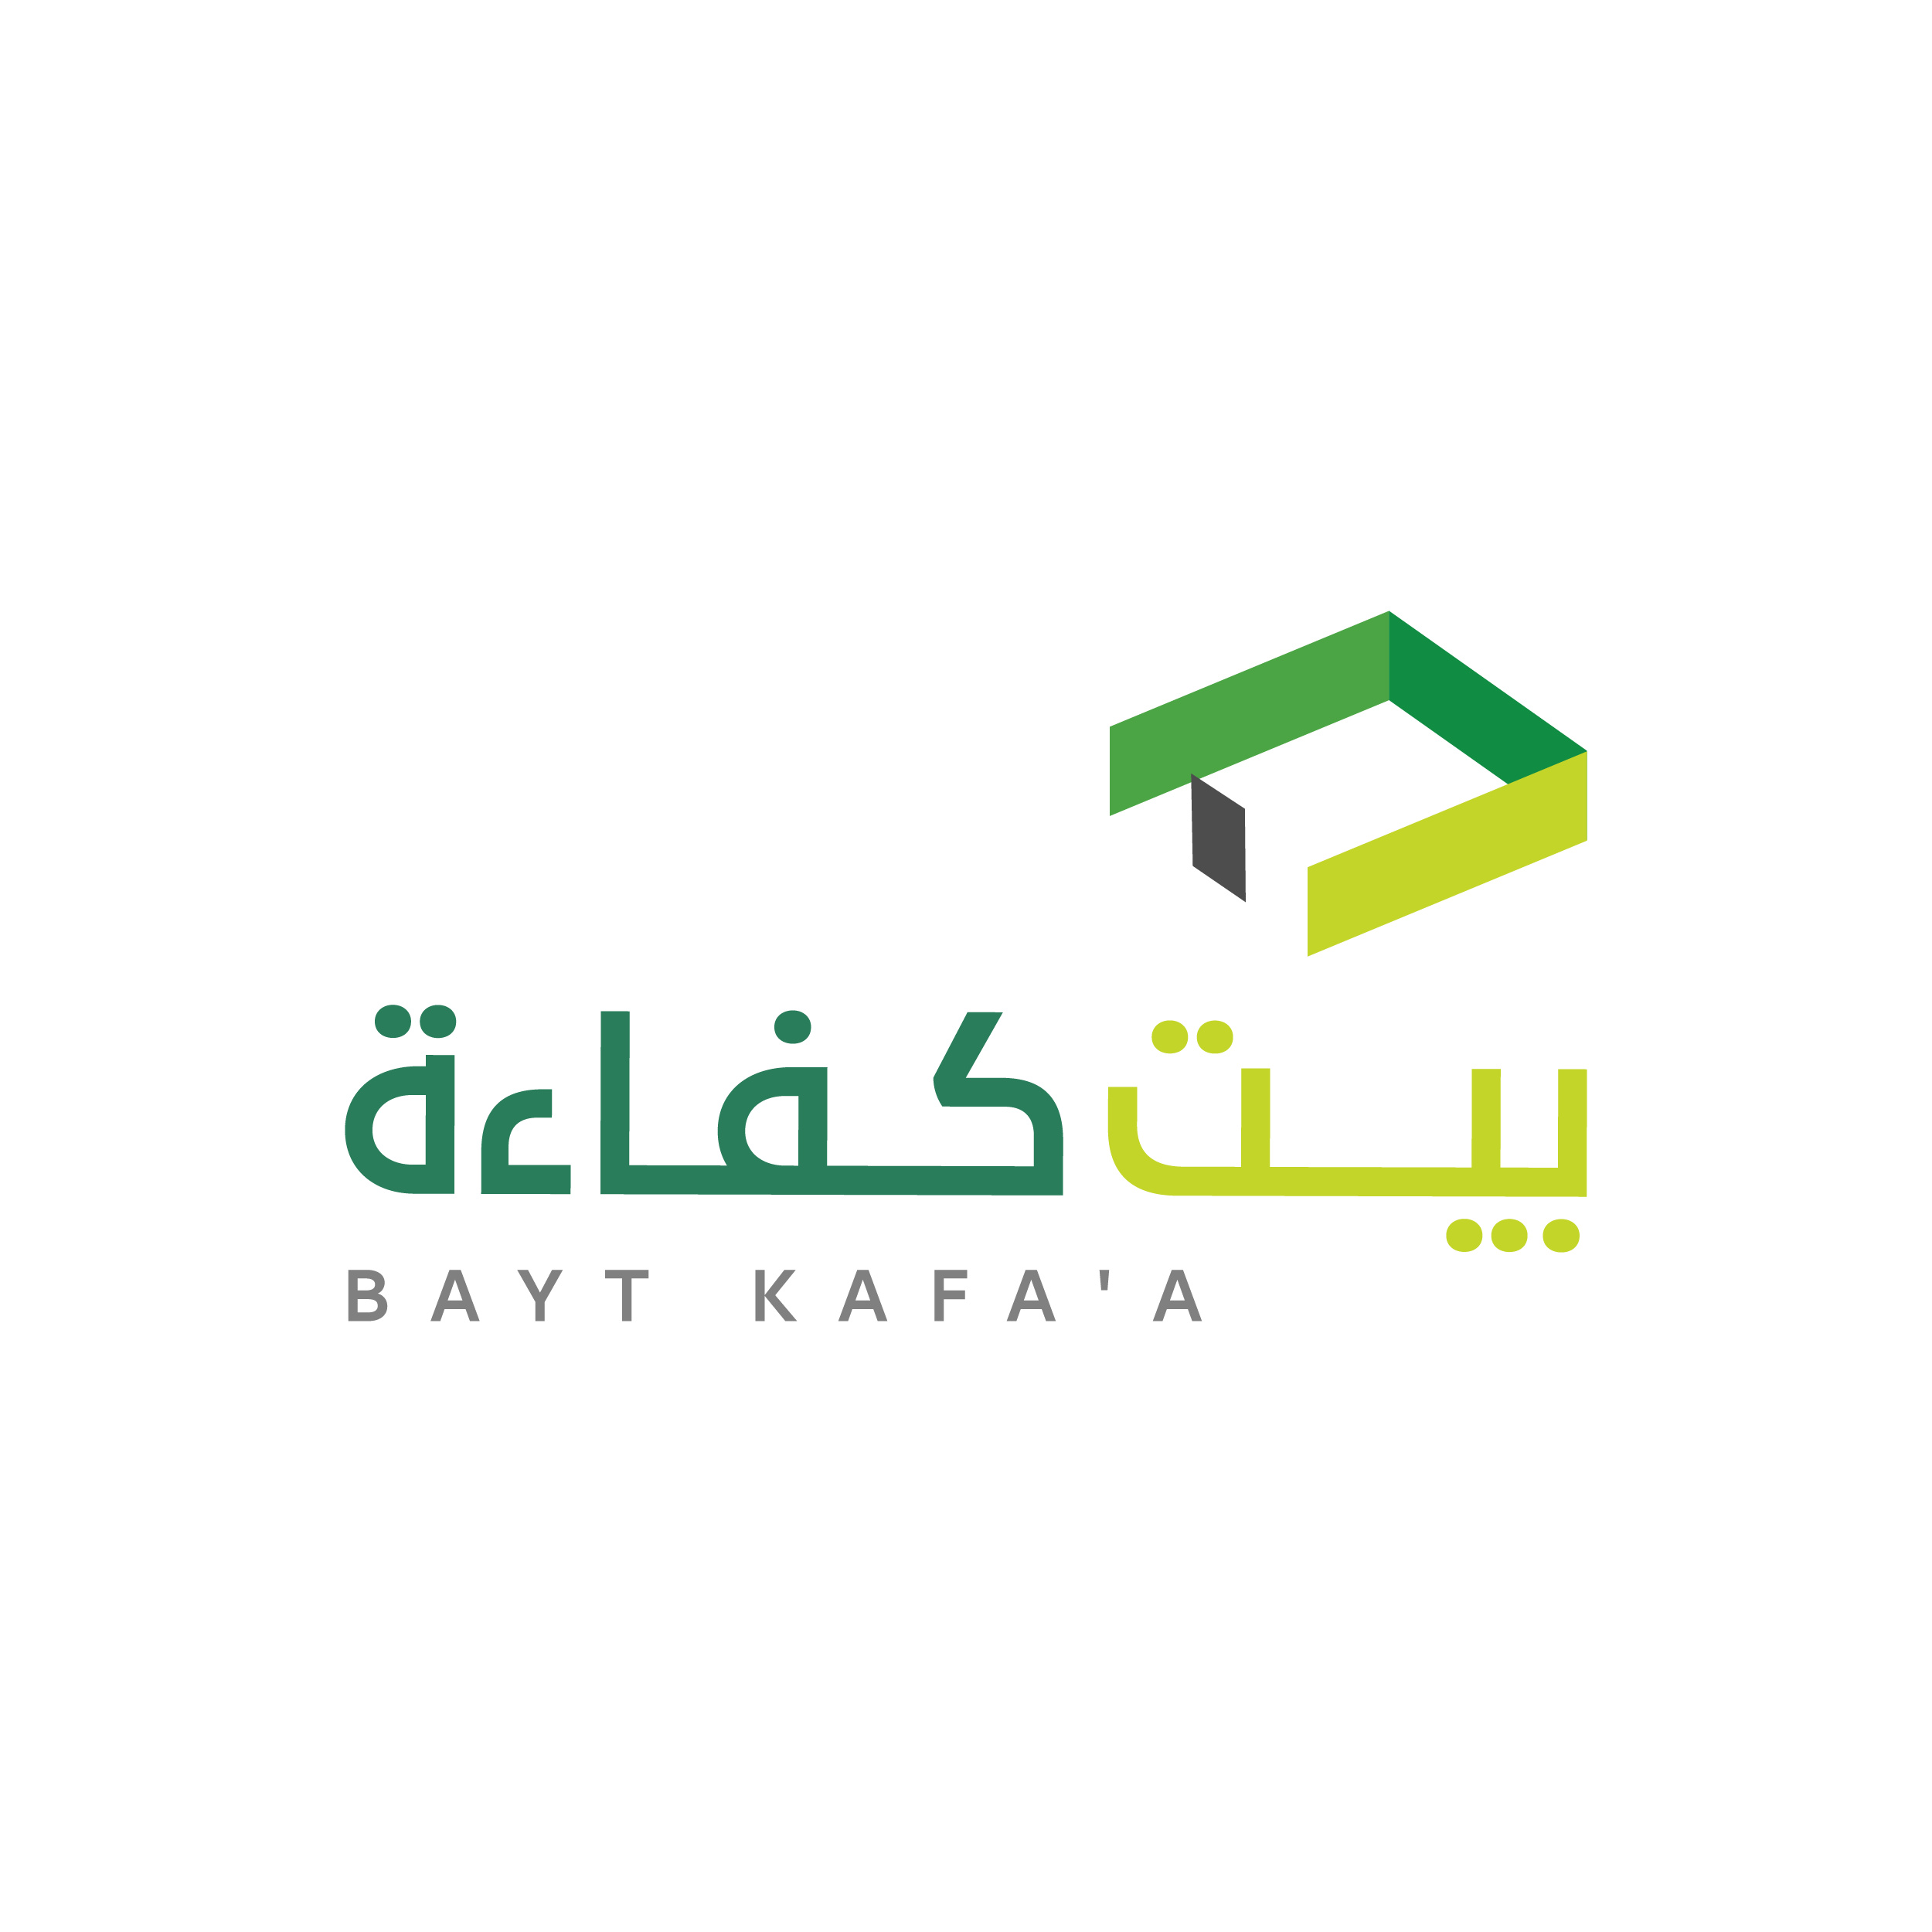 Bayt Kafa'a